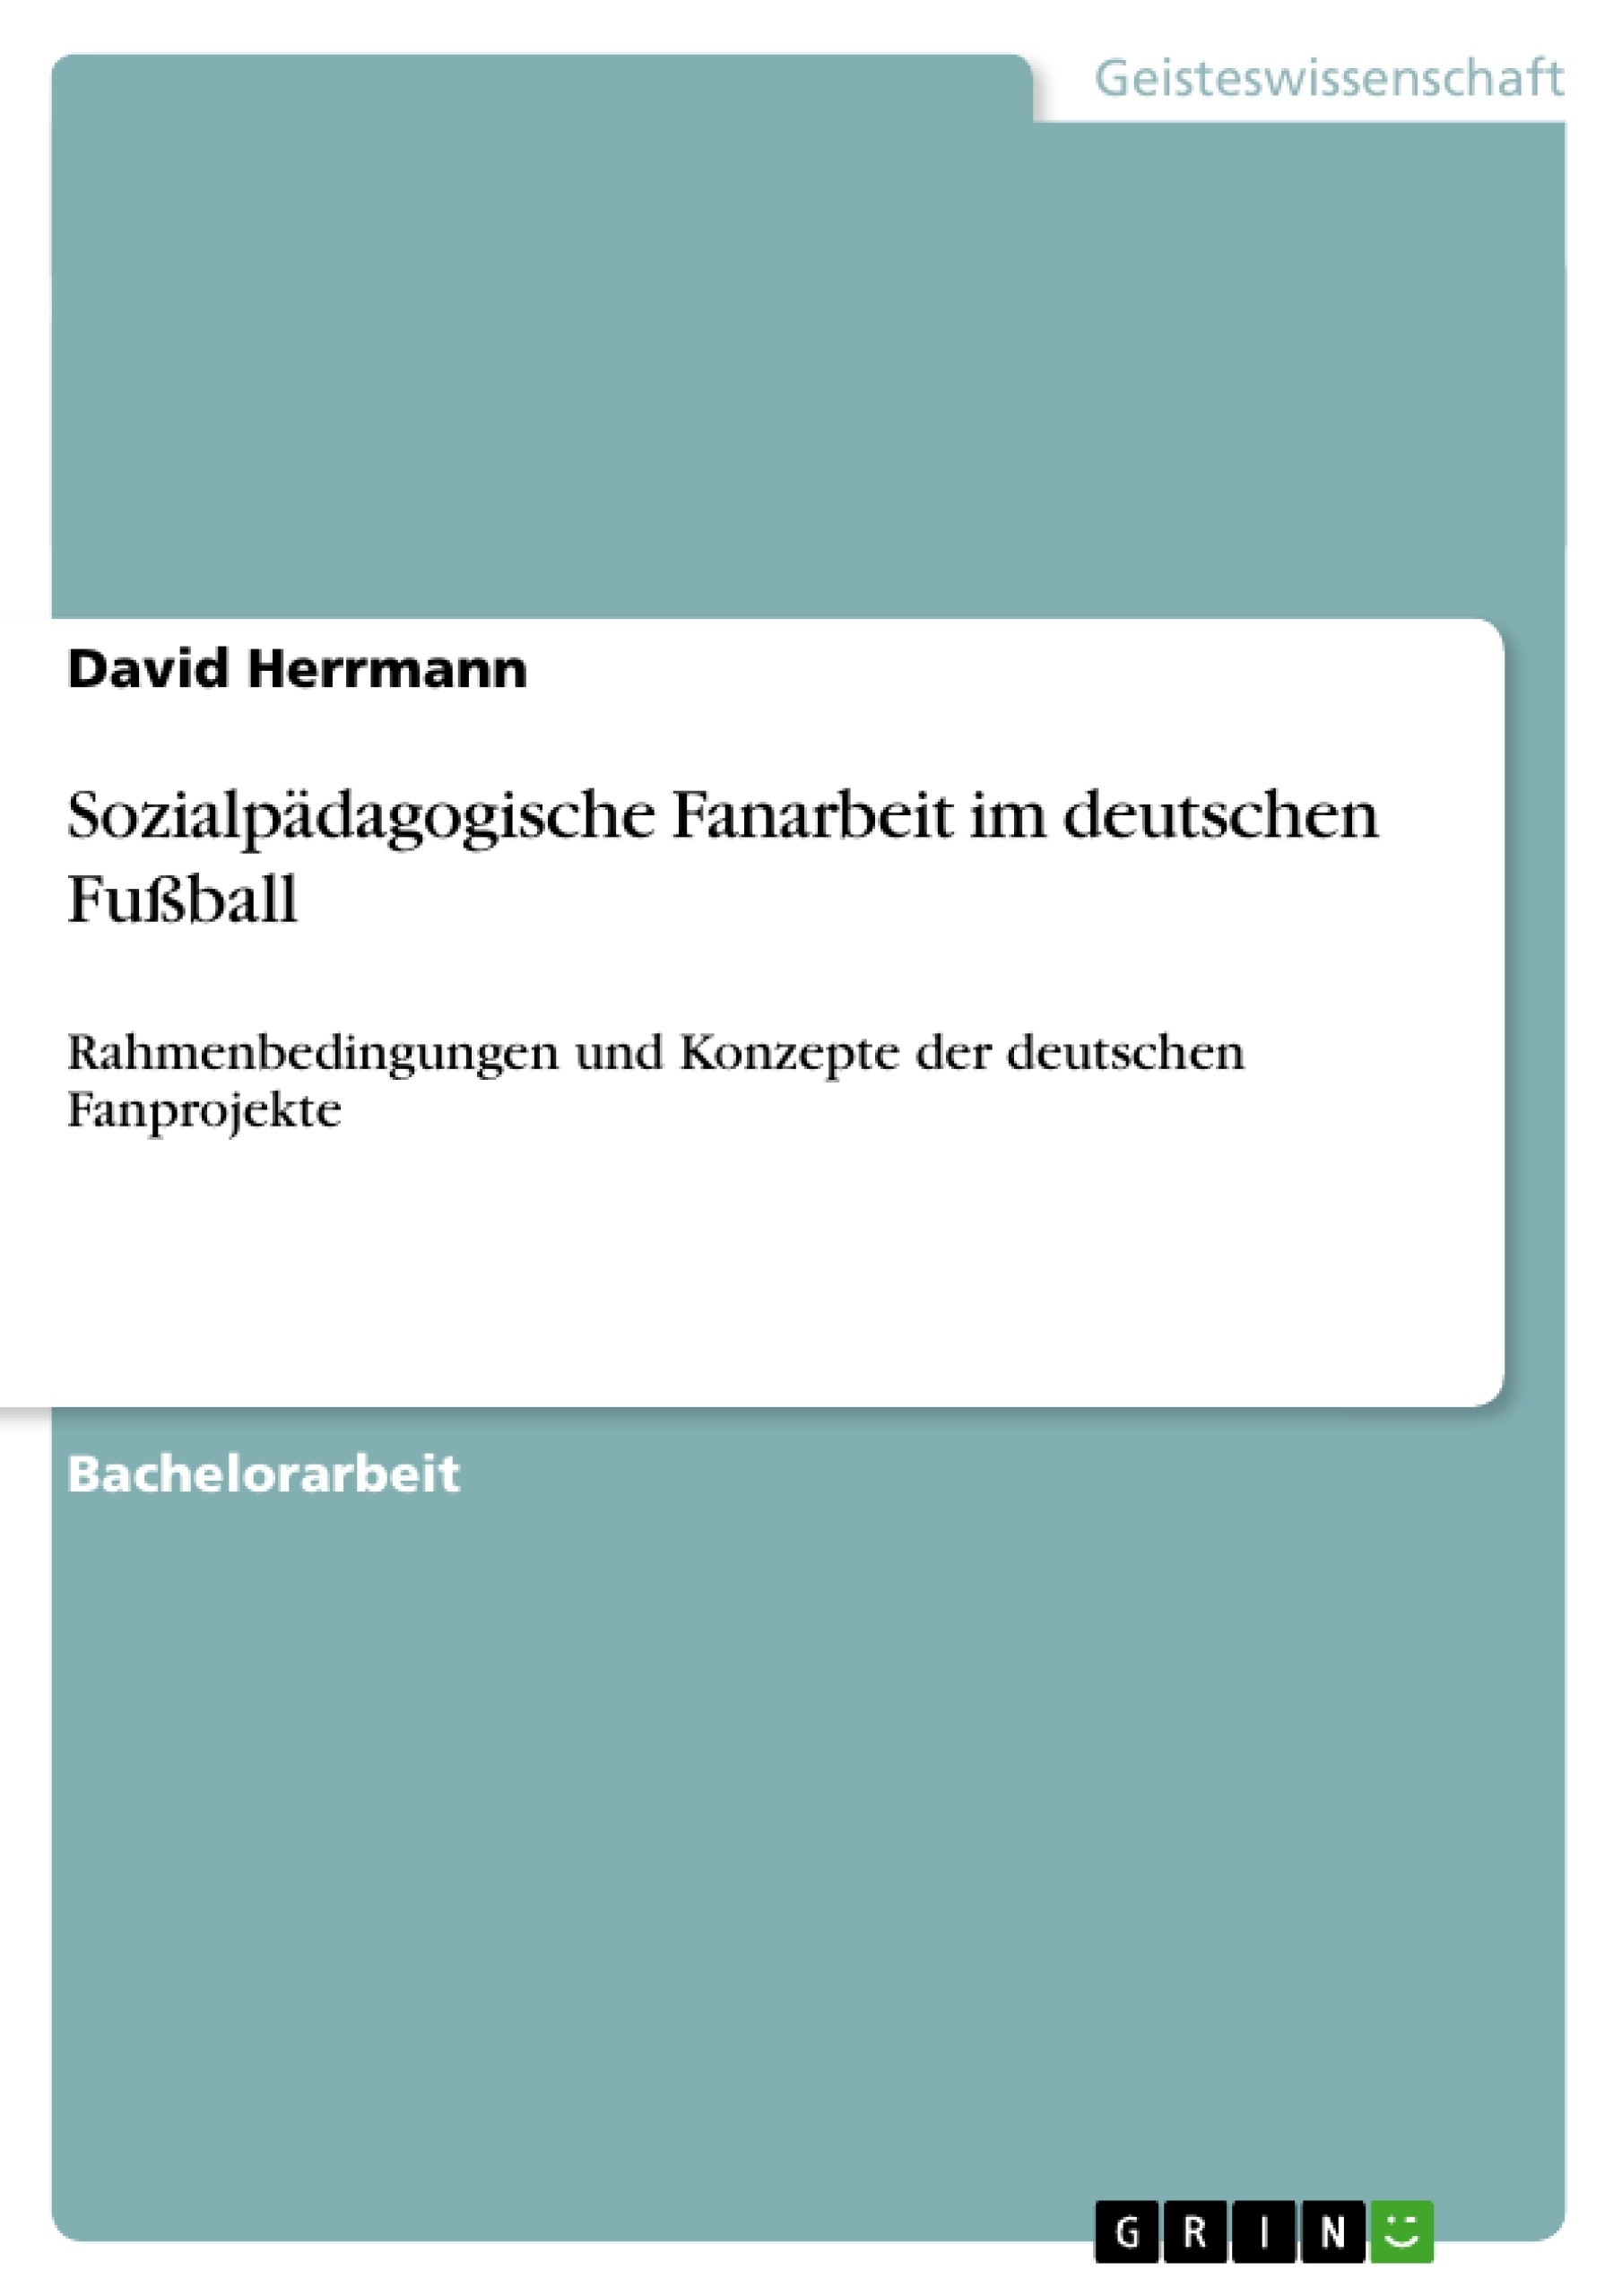 Titel: Sozialpädagogische Fanarbeit im deutschen Fußball